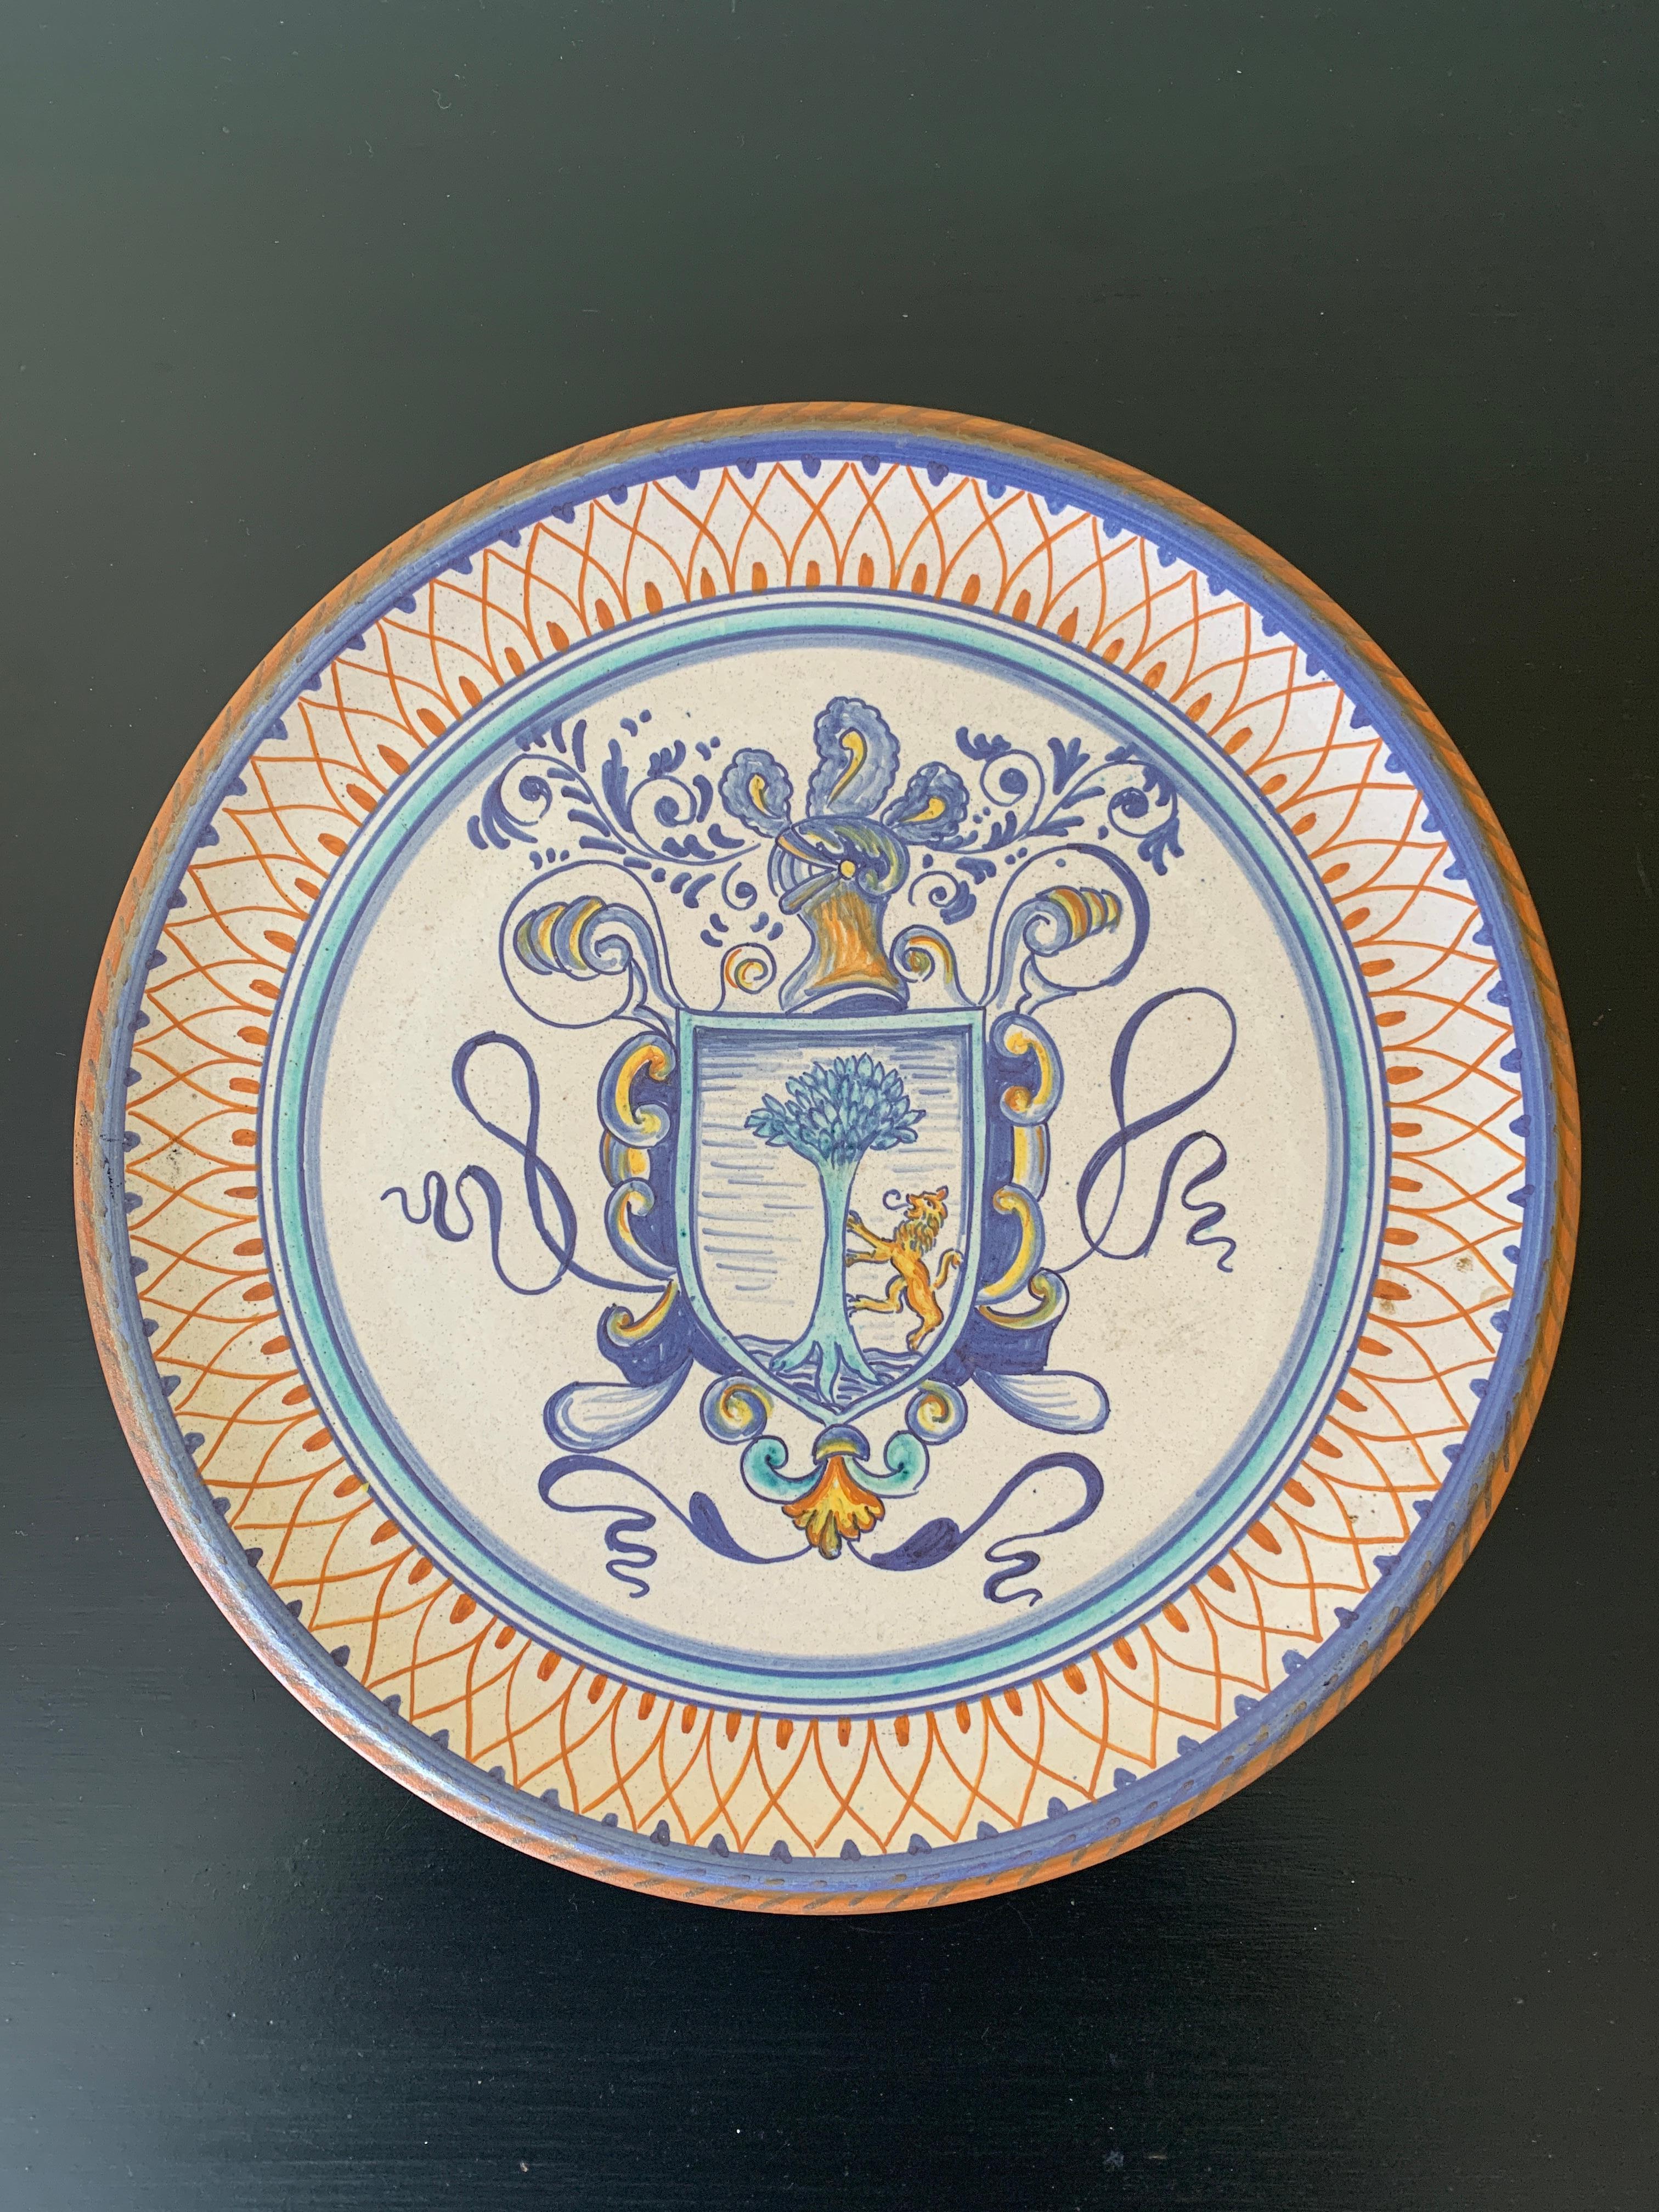 Magnifique assiette murale en faïence peinte à la main en bleu, crème et jaune, représentant un blason.

Par Fidia Deruta

Italie, Fin du 20e siècle

Mesures : 11 